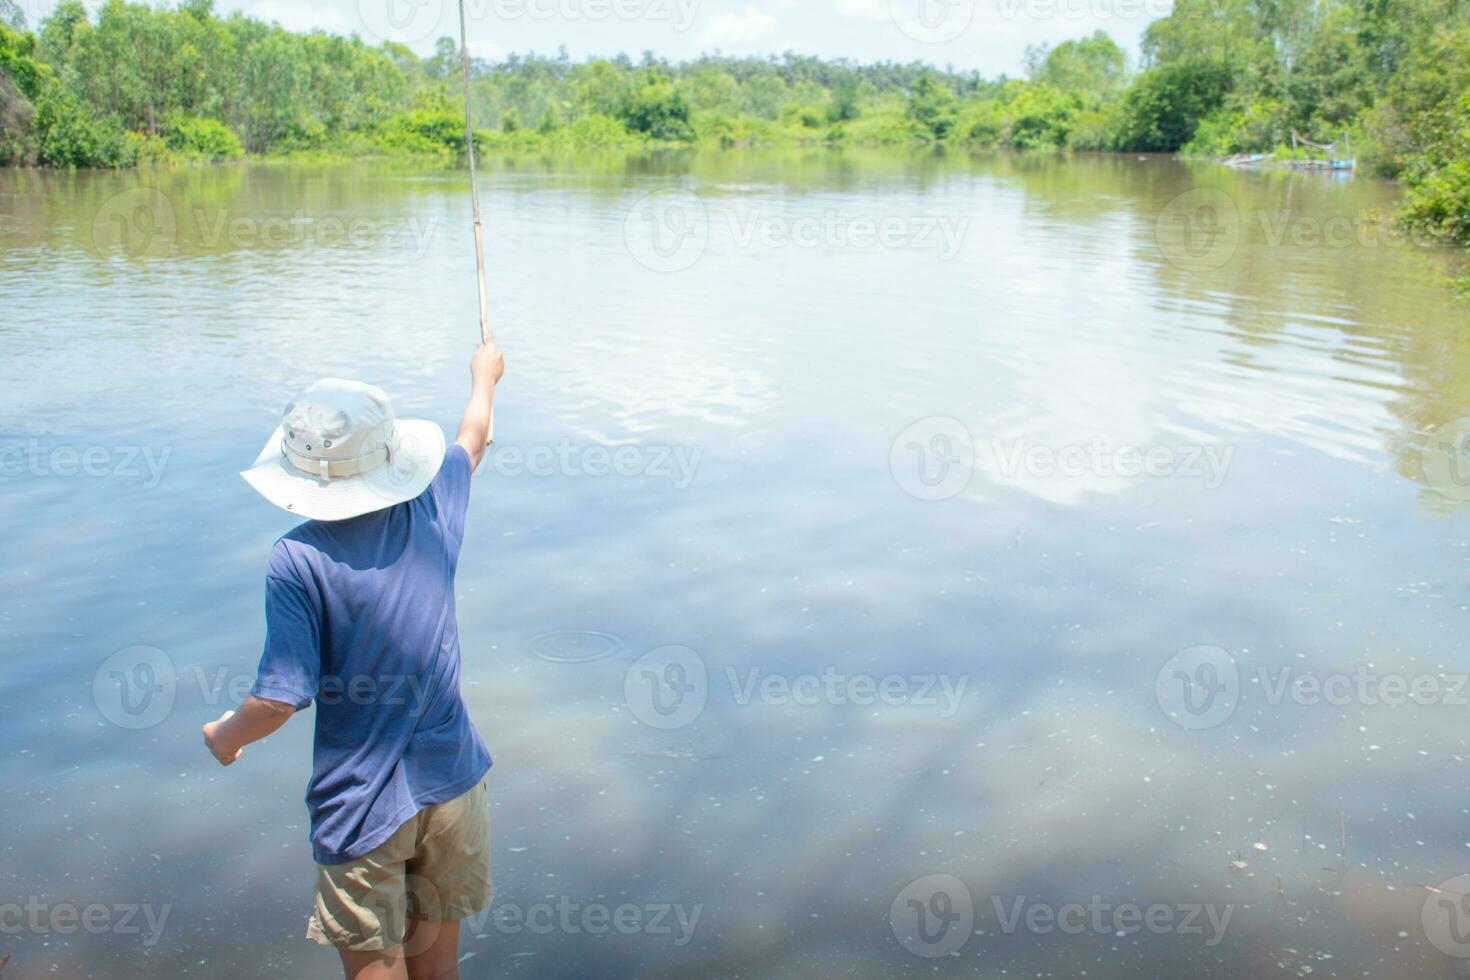 asiatique garçon permanent pêche par rivière en utilisant bambou pêche barre sur magnifique l'eau surface et lever du soleil ,mode de vie de asiatique enfants, mode de vie dans rural Thaïlande,notion de la vie et durabilité. photo